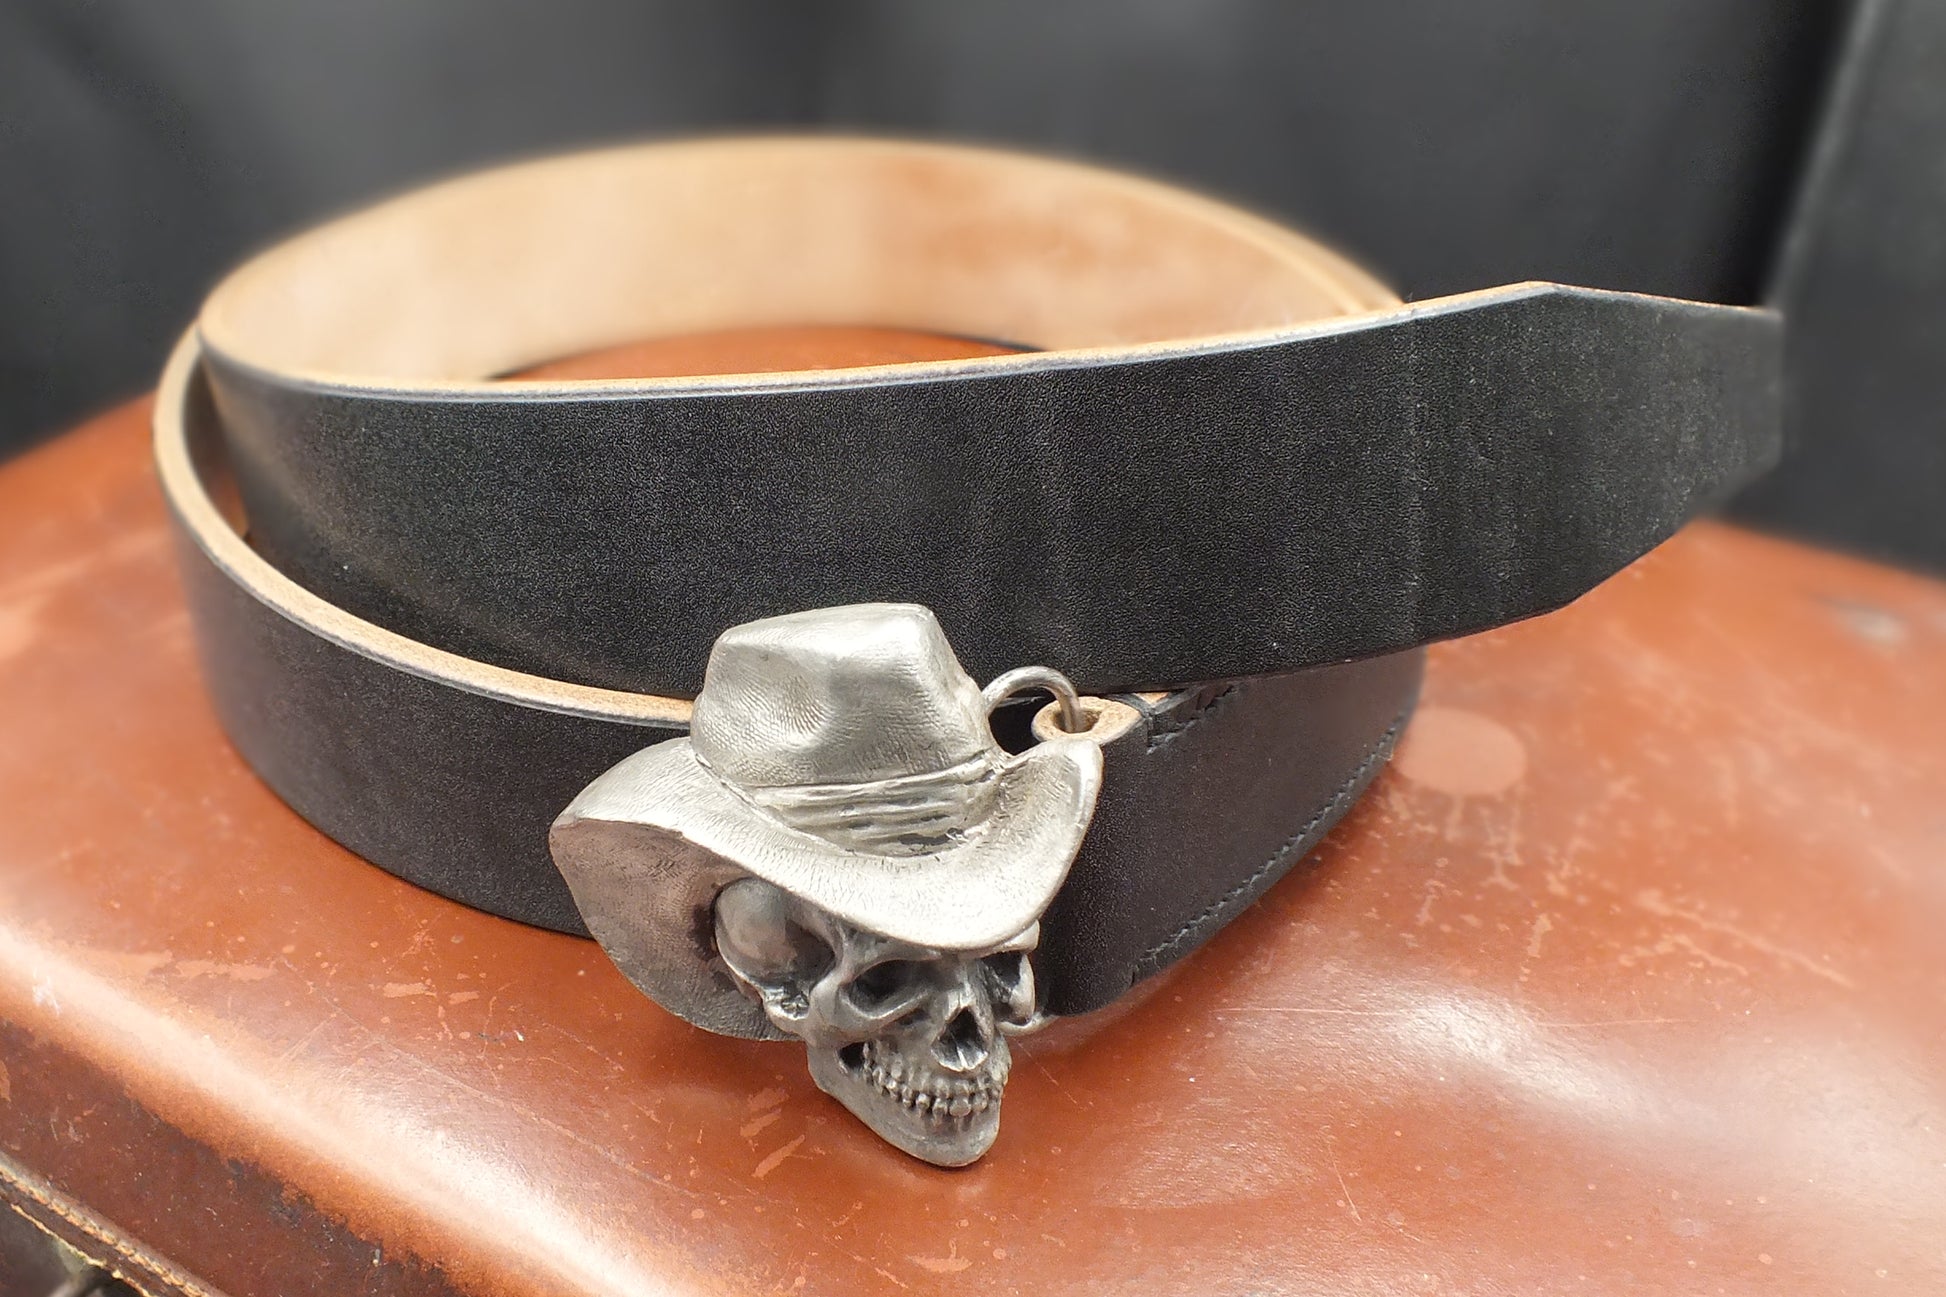 oak-bark-tanned-leather-belt-skull-buckle-40mm-handmade